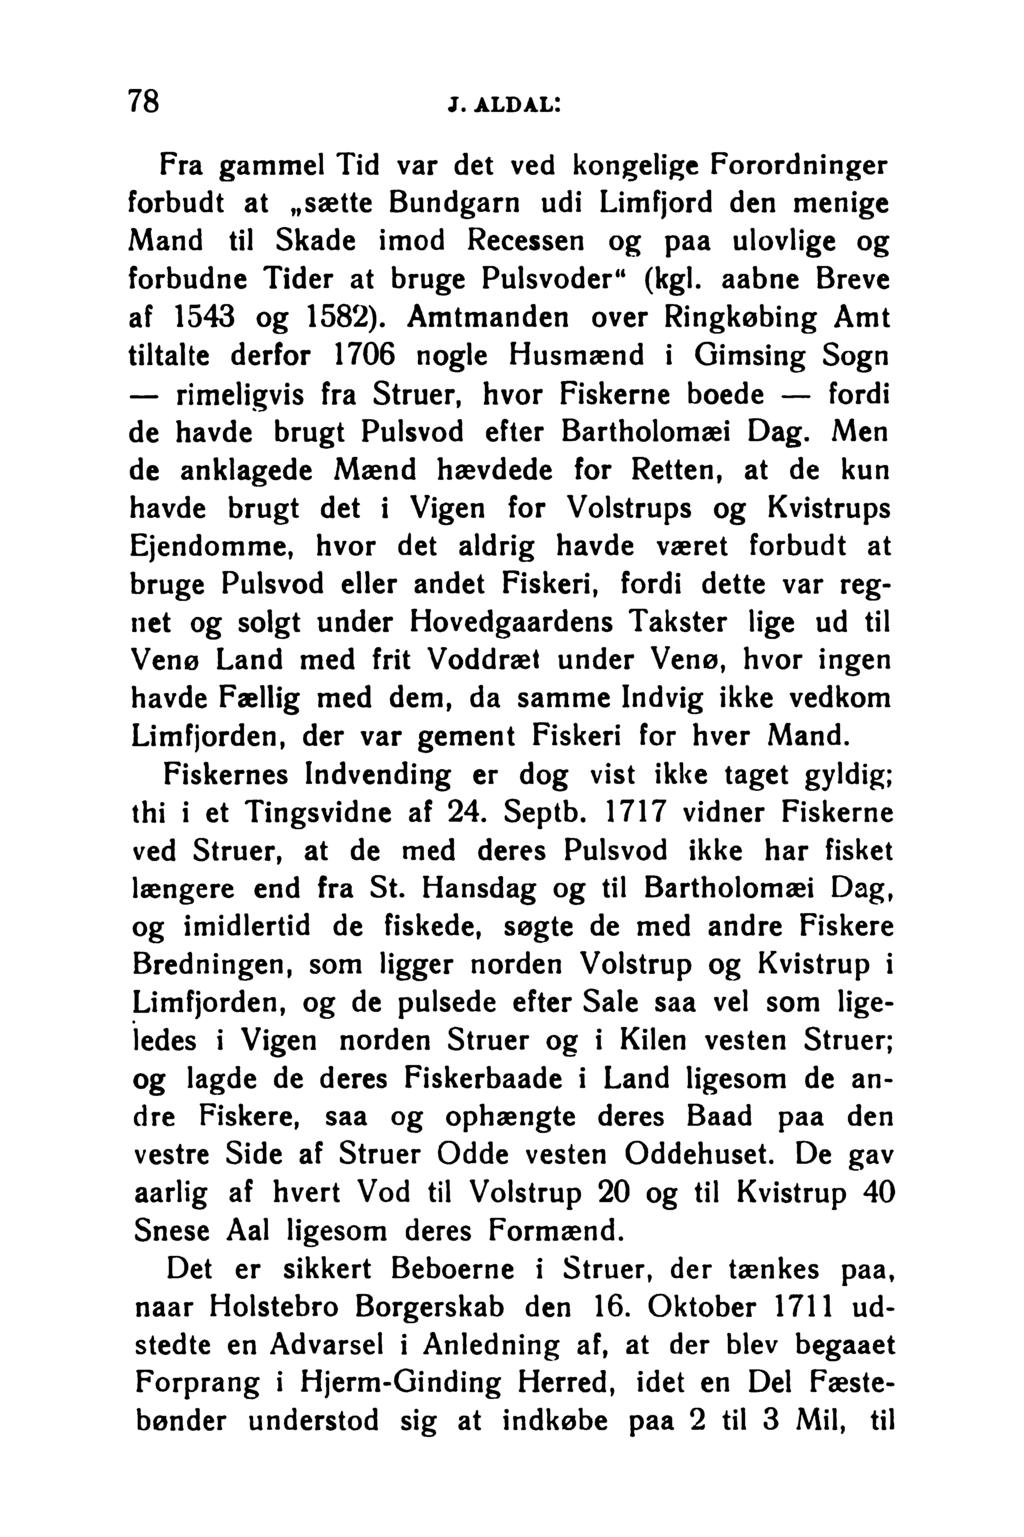 78 j. aldal: Fra gammel Tid var det ved kongelige Forordninger forbudt at sætte Bundgarn udi Limfjord den menige Mand til Skade imod Recessen og paa ulovlige og forbudne Tider at bruge Pulsvoder (kgl.